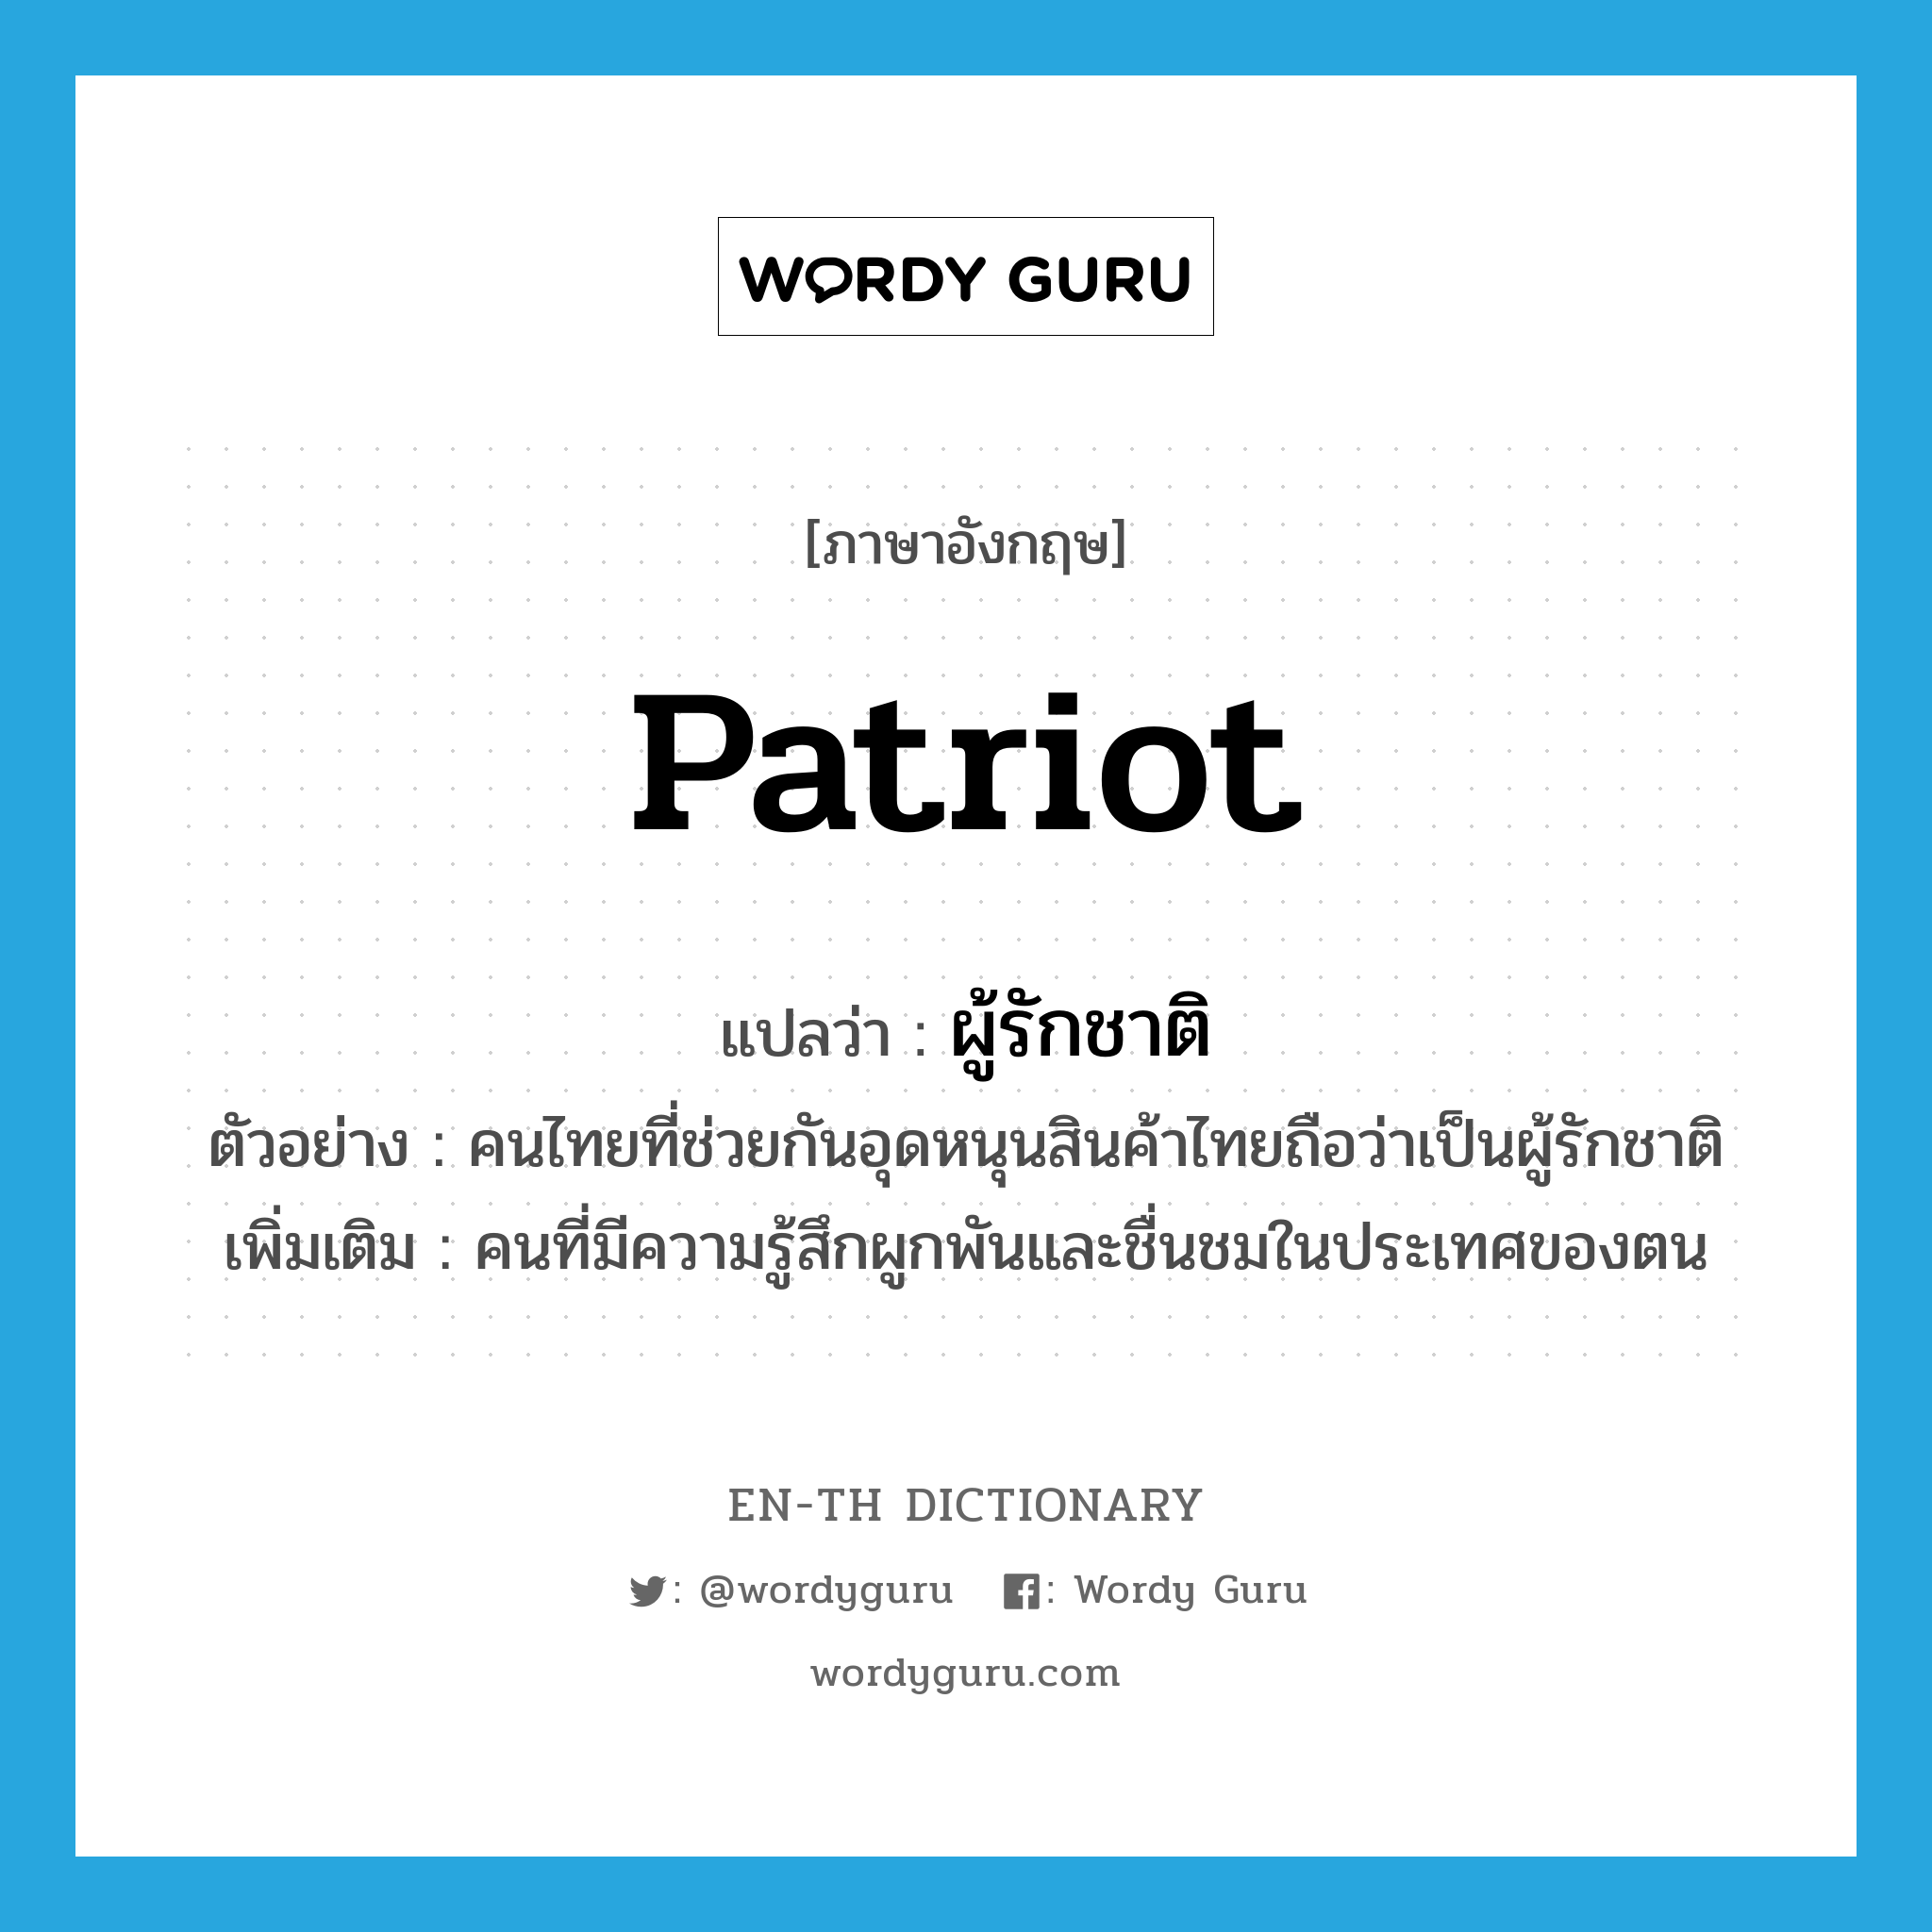 patriot แปลว่า?, คำศัพท์ภาษาอังกฤษ patriot แปลว่า ผู้รักชาติ ประเภท N ตัวอย่าง คนไทยที่ช่วยกันอุดหนุนสินค้าไทยถือว่าเป็นผู้รักชาติ เพิ่มเติม คนที่มีความรู้สึกผูกพันและชื่นชมในประเทศของตน หมวด N